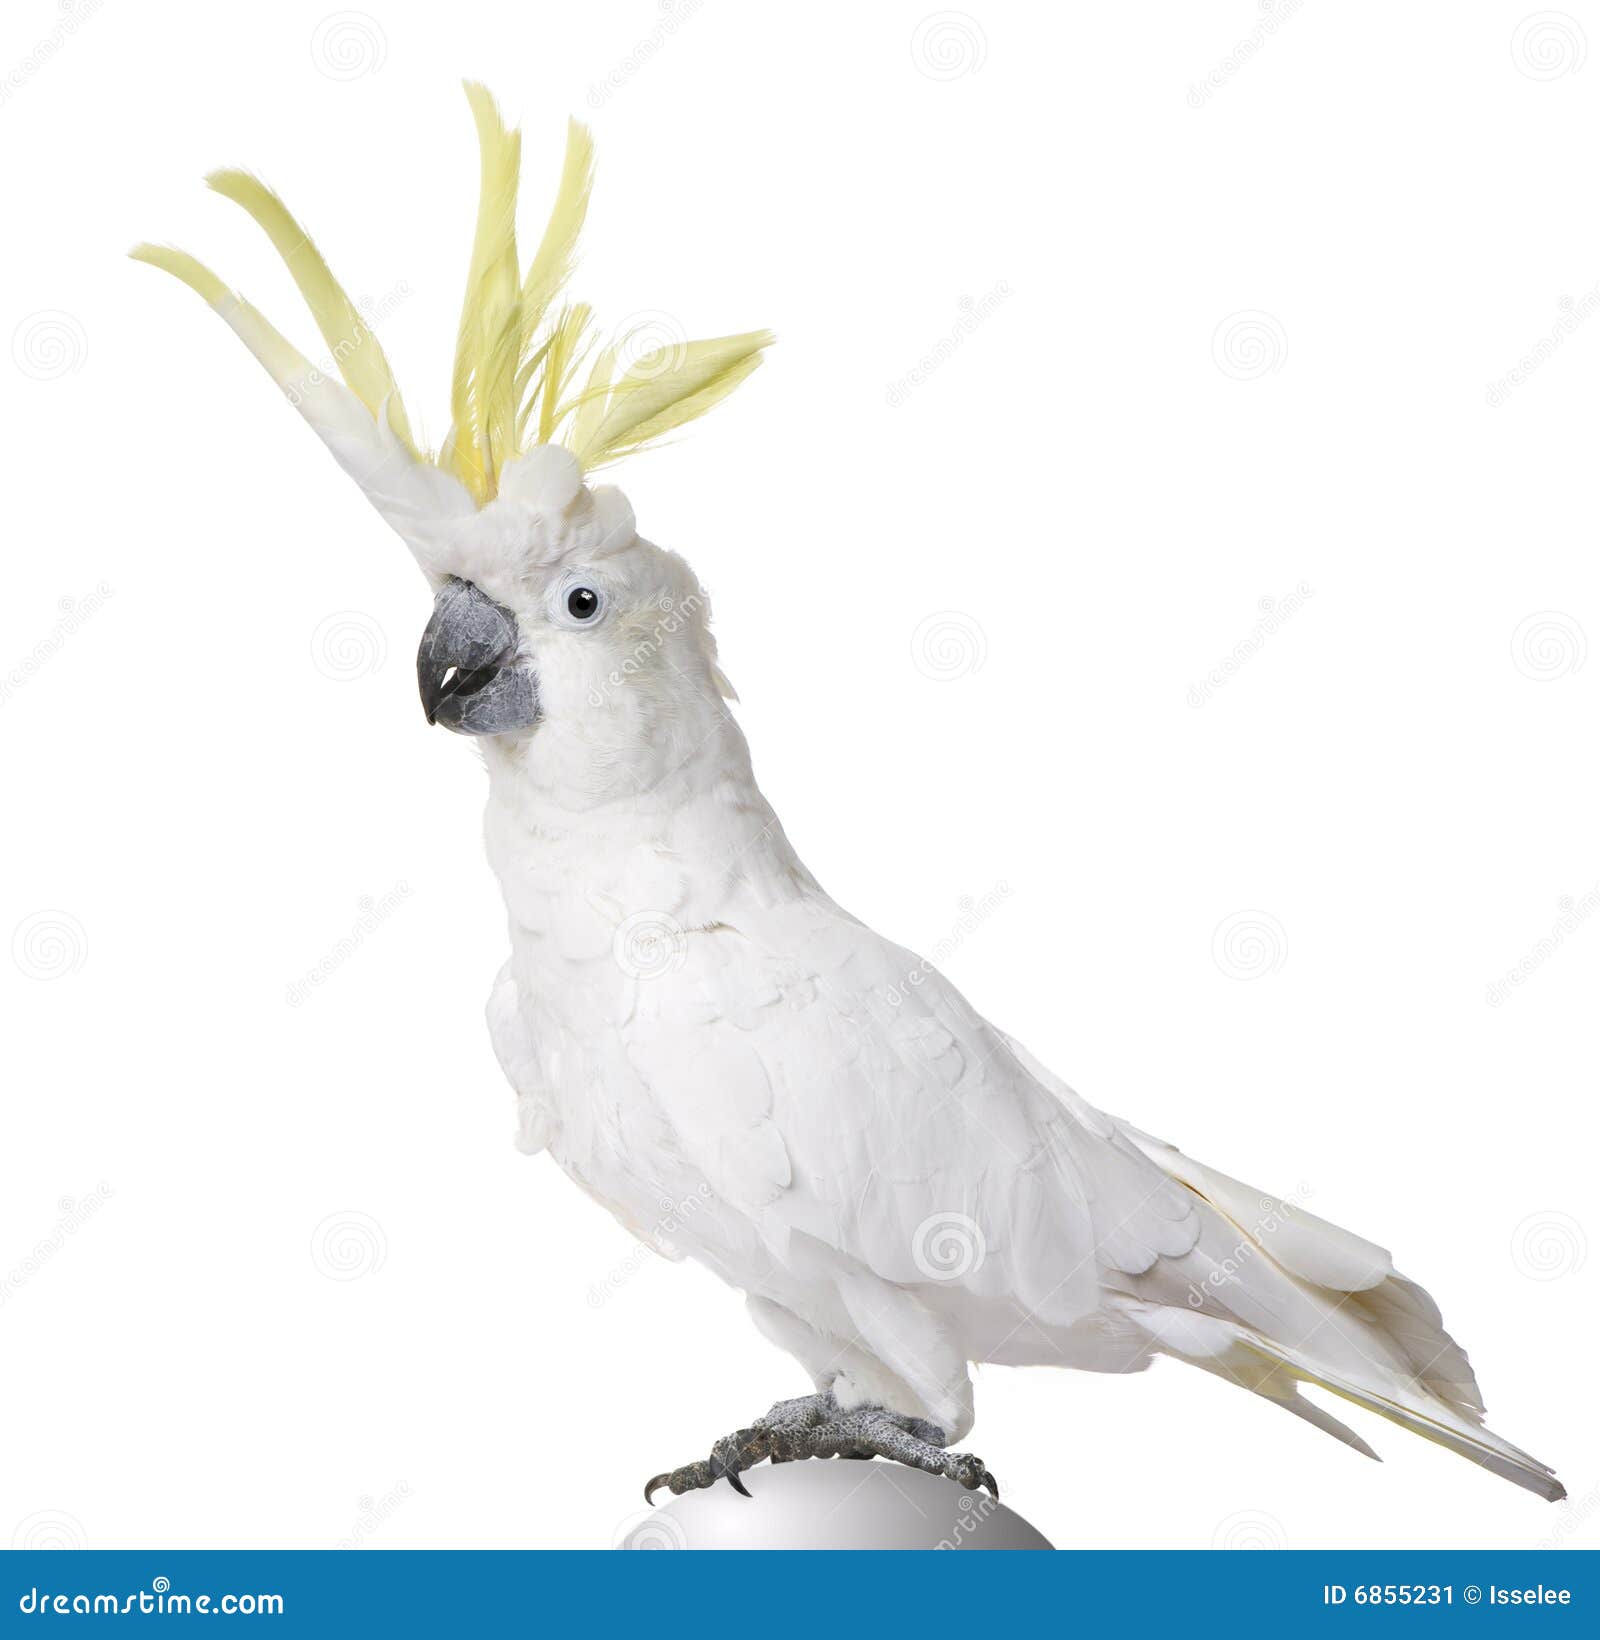 sulphur-crested cockatoo - cacatua galerita